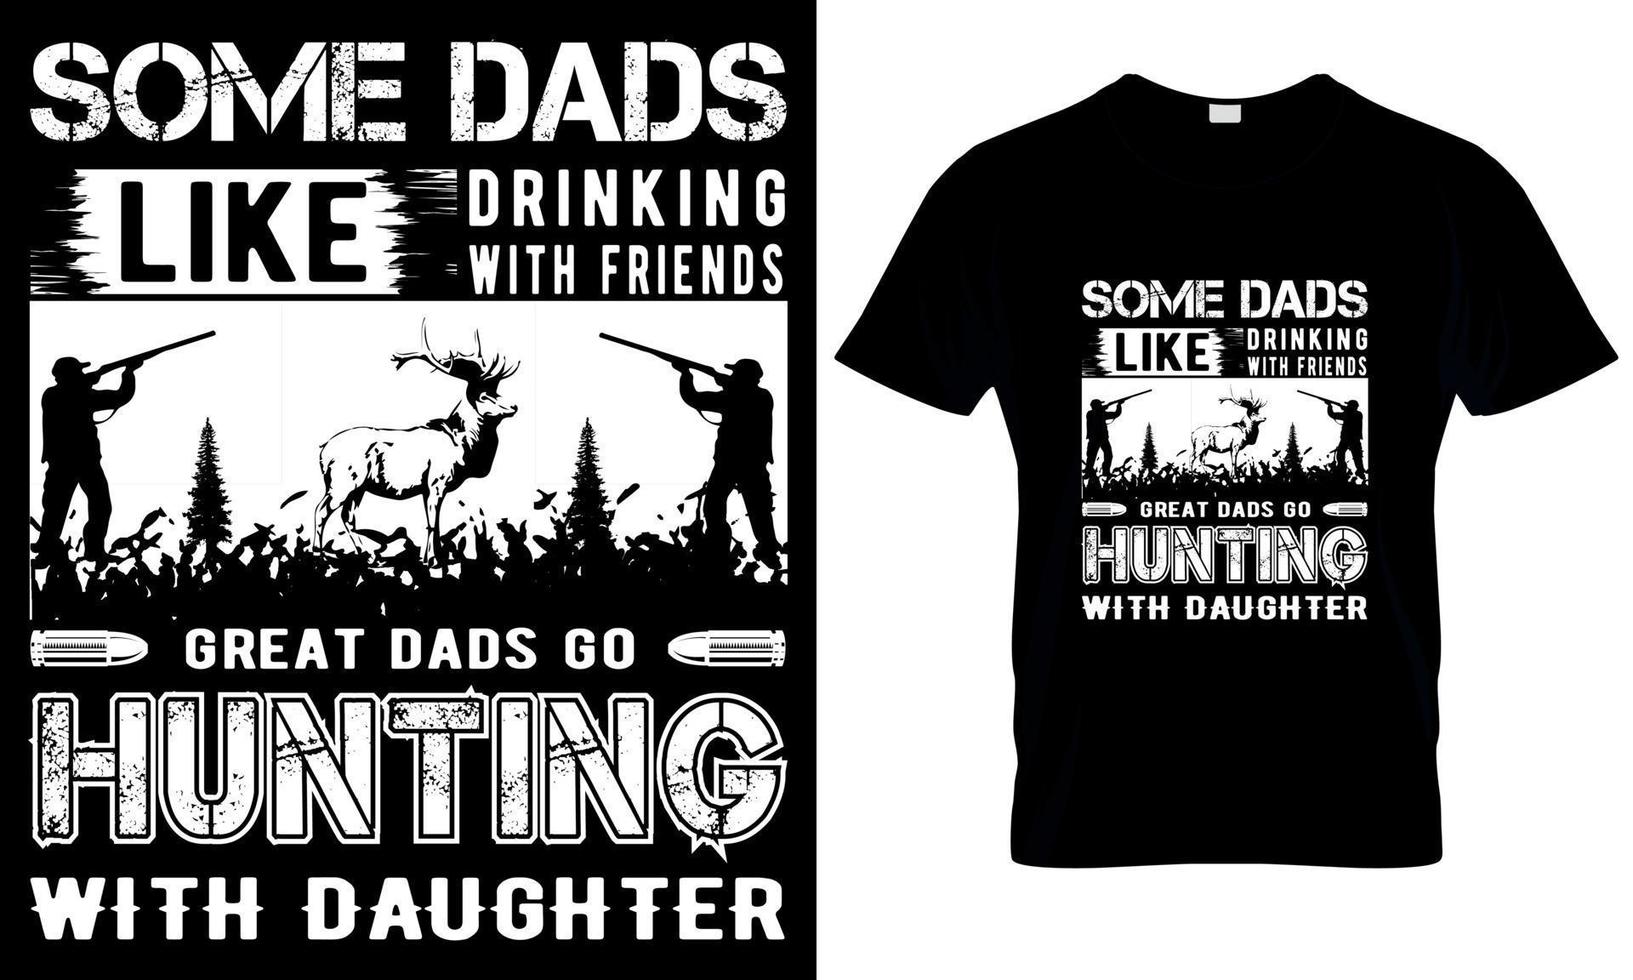 certains papas comme en buvant avec copains génial papas aller chasse avec fille t chemise Libre de droits images vecteur